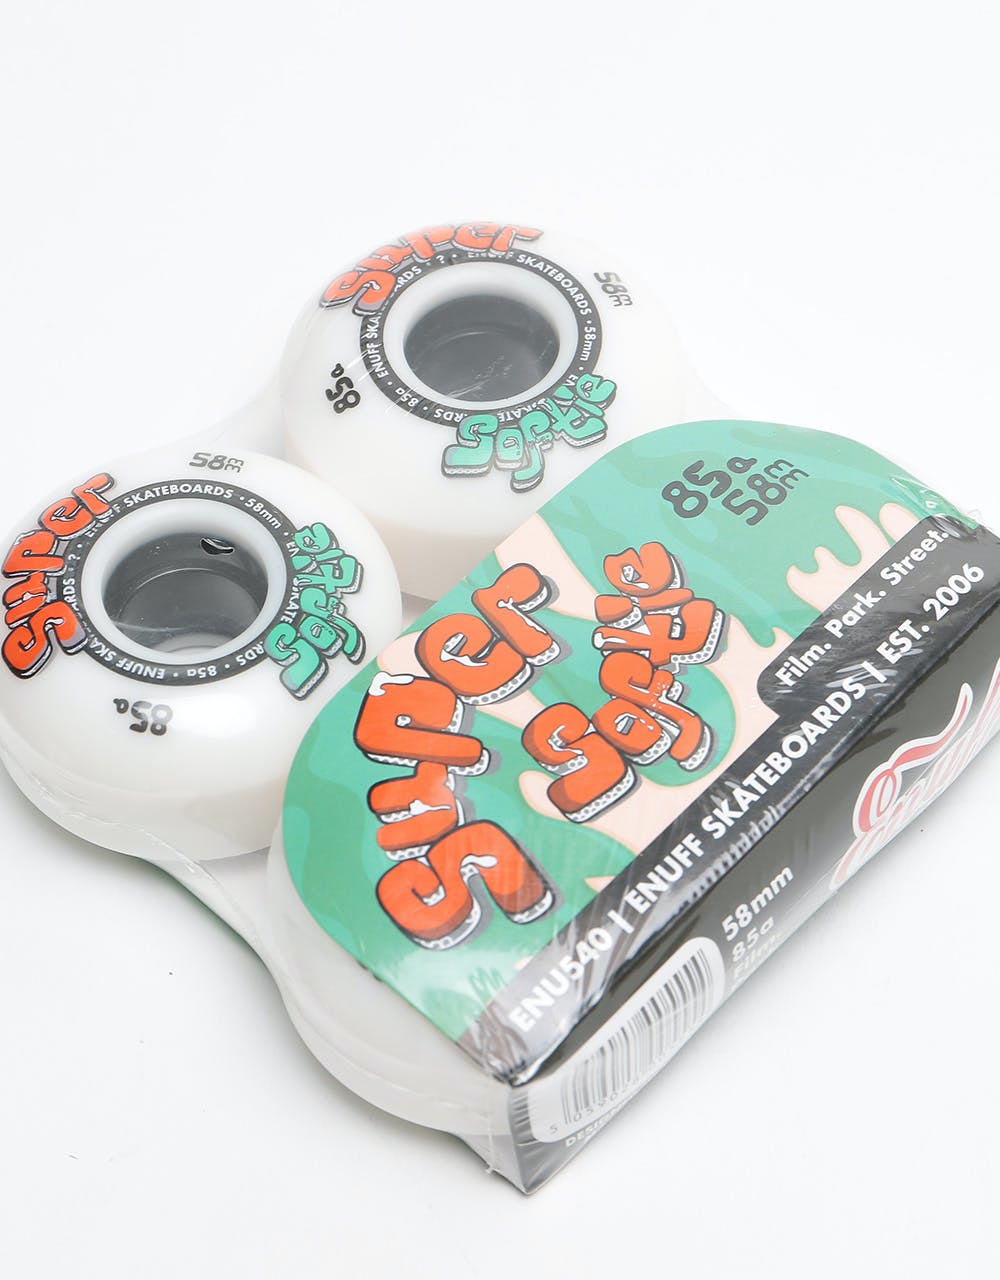 Enuff Super Softie 85a Skateboard Wheel - 58mm